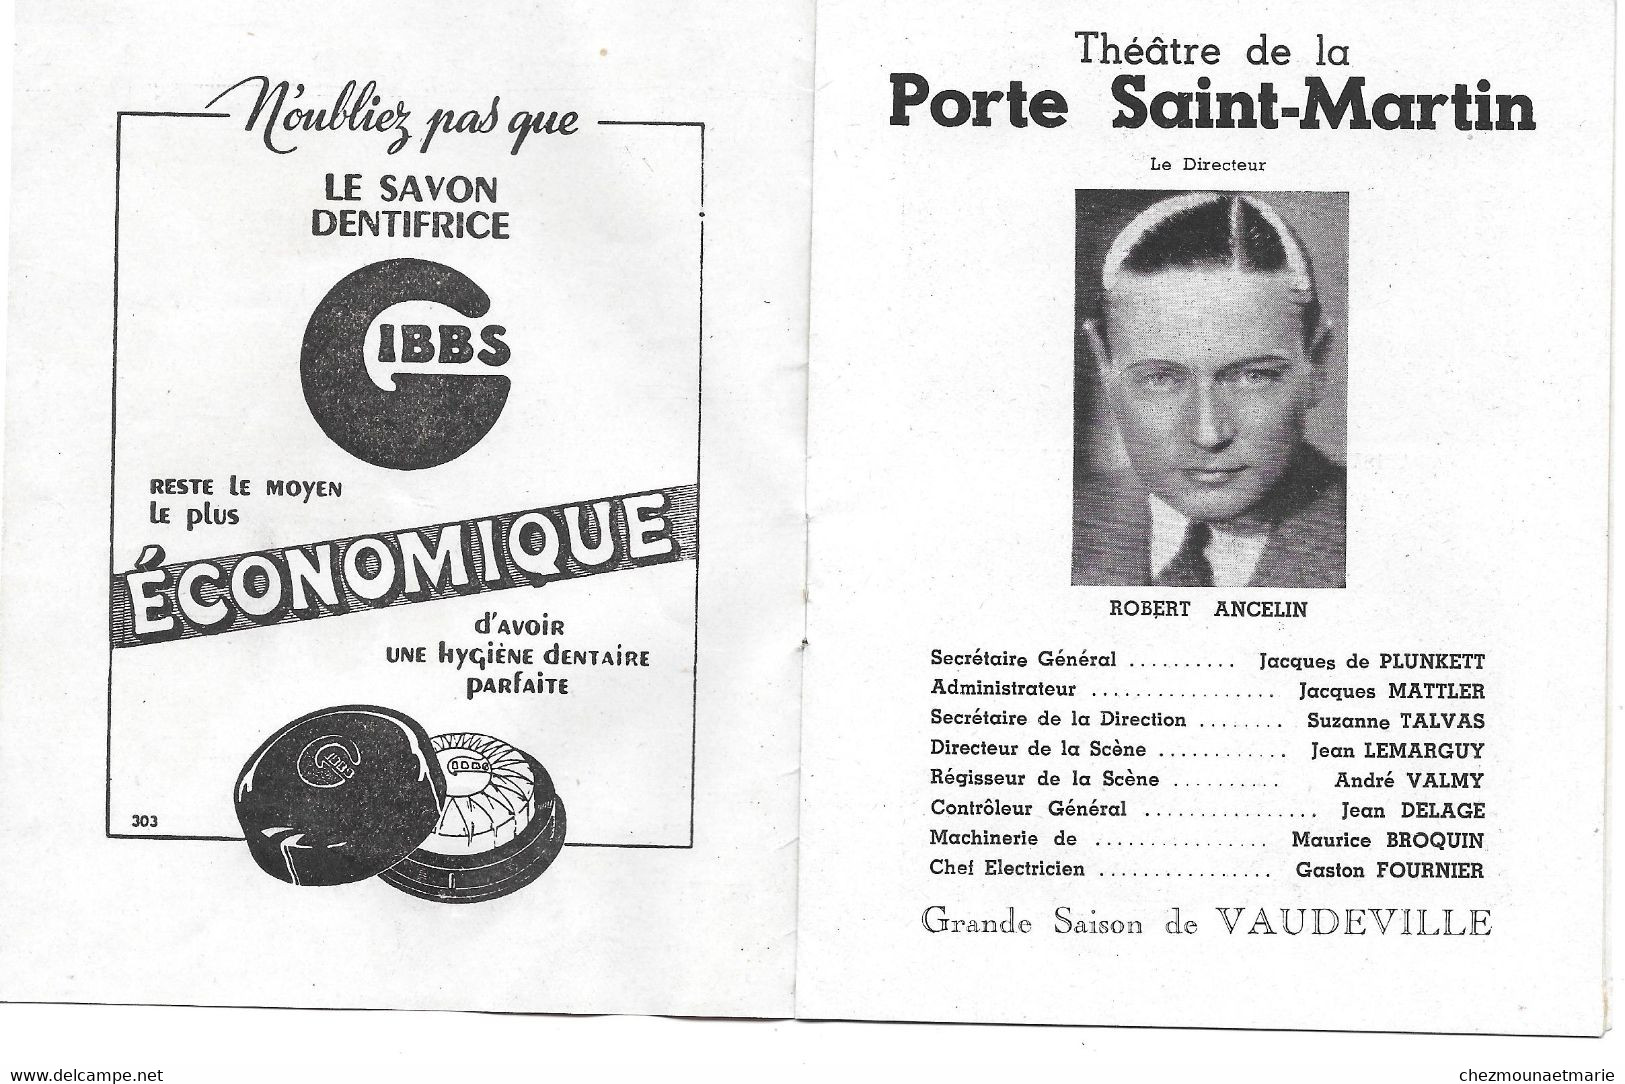 THEATRE DE LA PORTE ST MARTIN GRANDE SAISON DE VAUDEVILLE 1942 FASCICULE - Programs